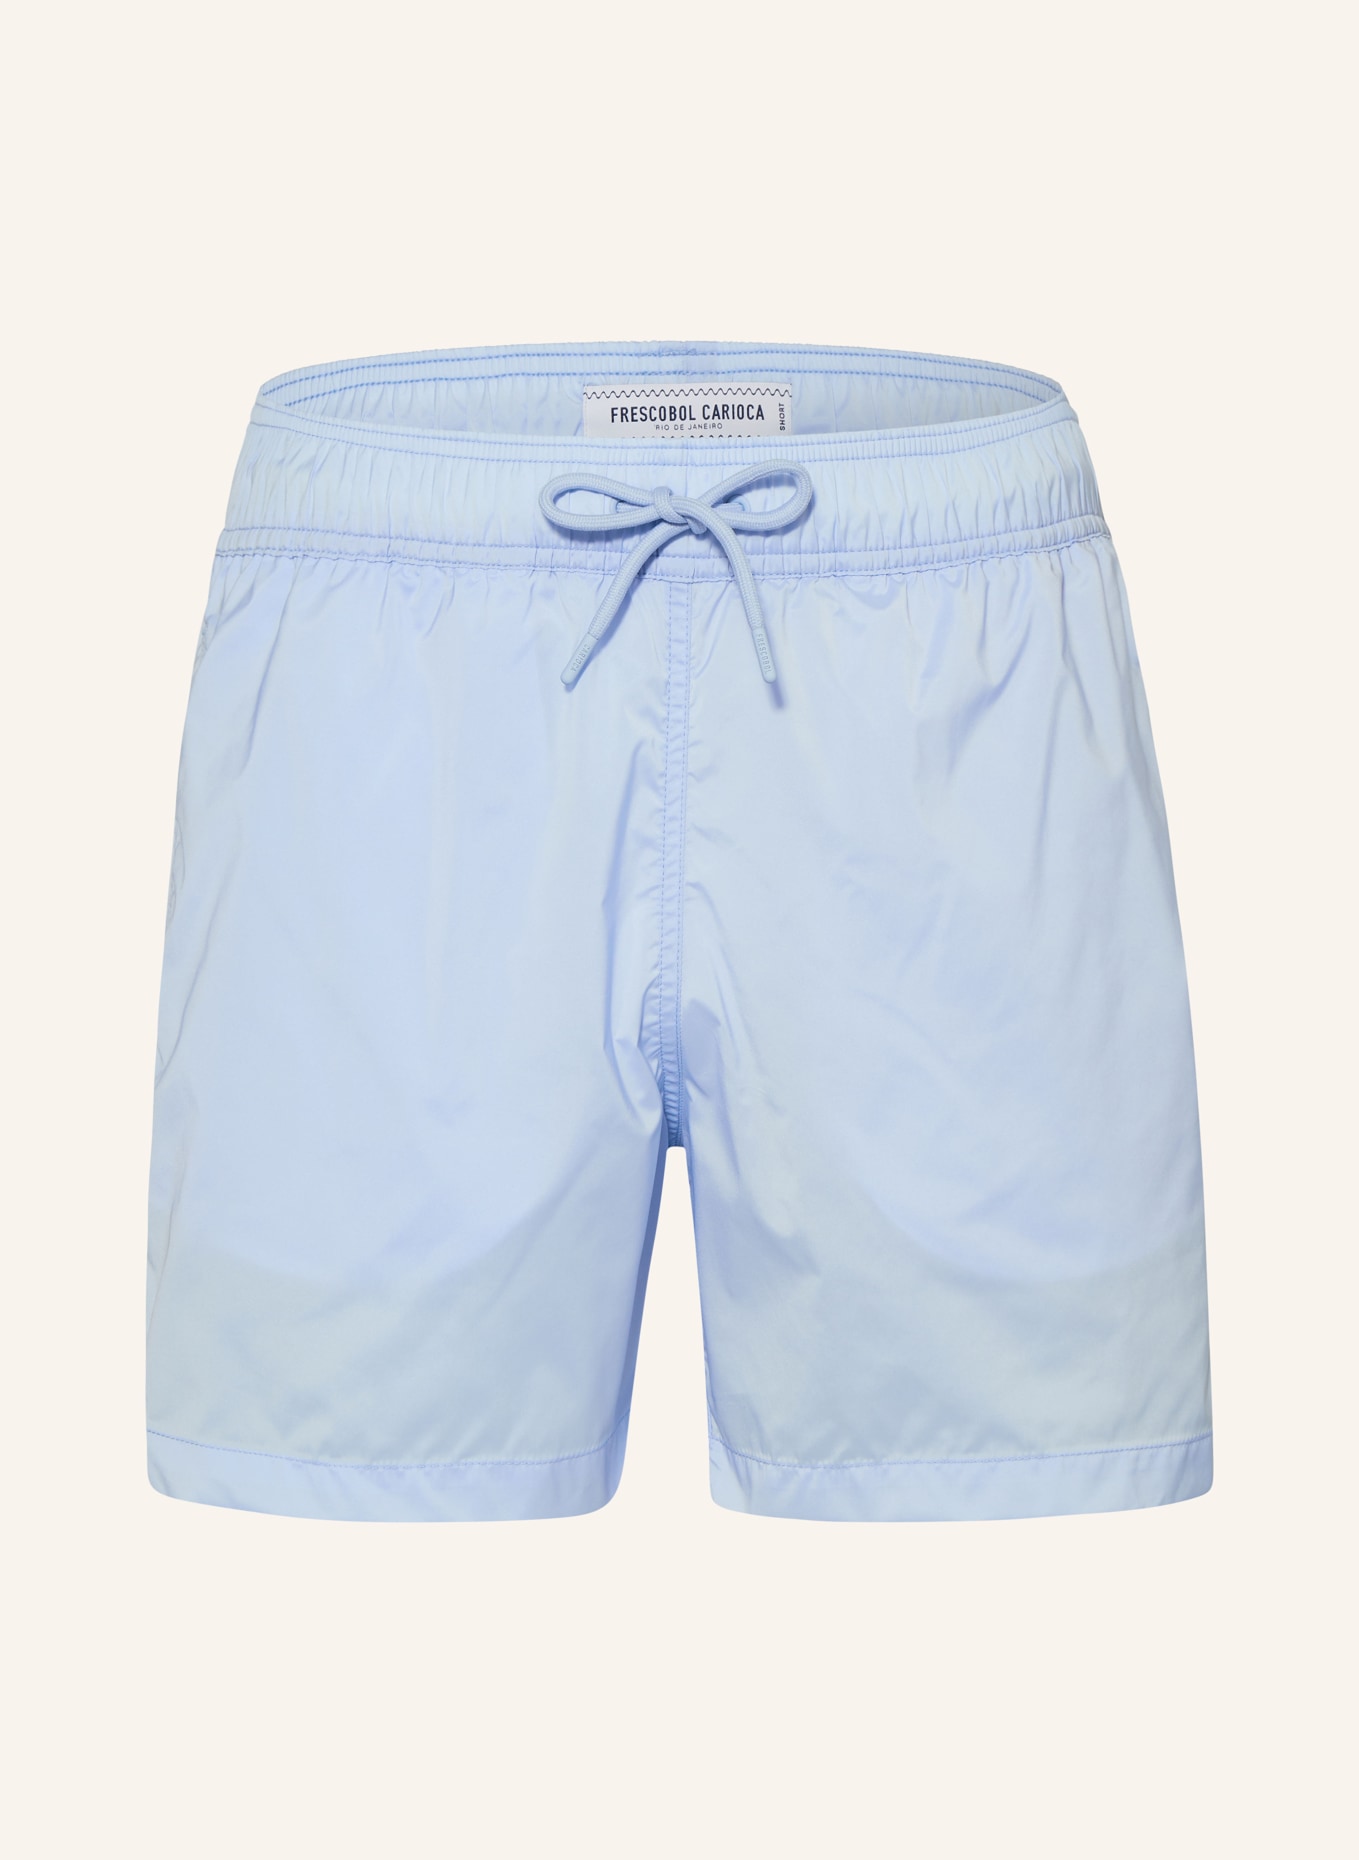 FRESCOBOL CARIOCA Swim shorts SALVADOR, Color: LIGHT BLUE (Image 1)